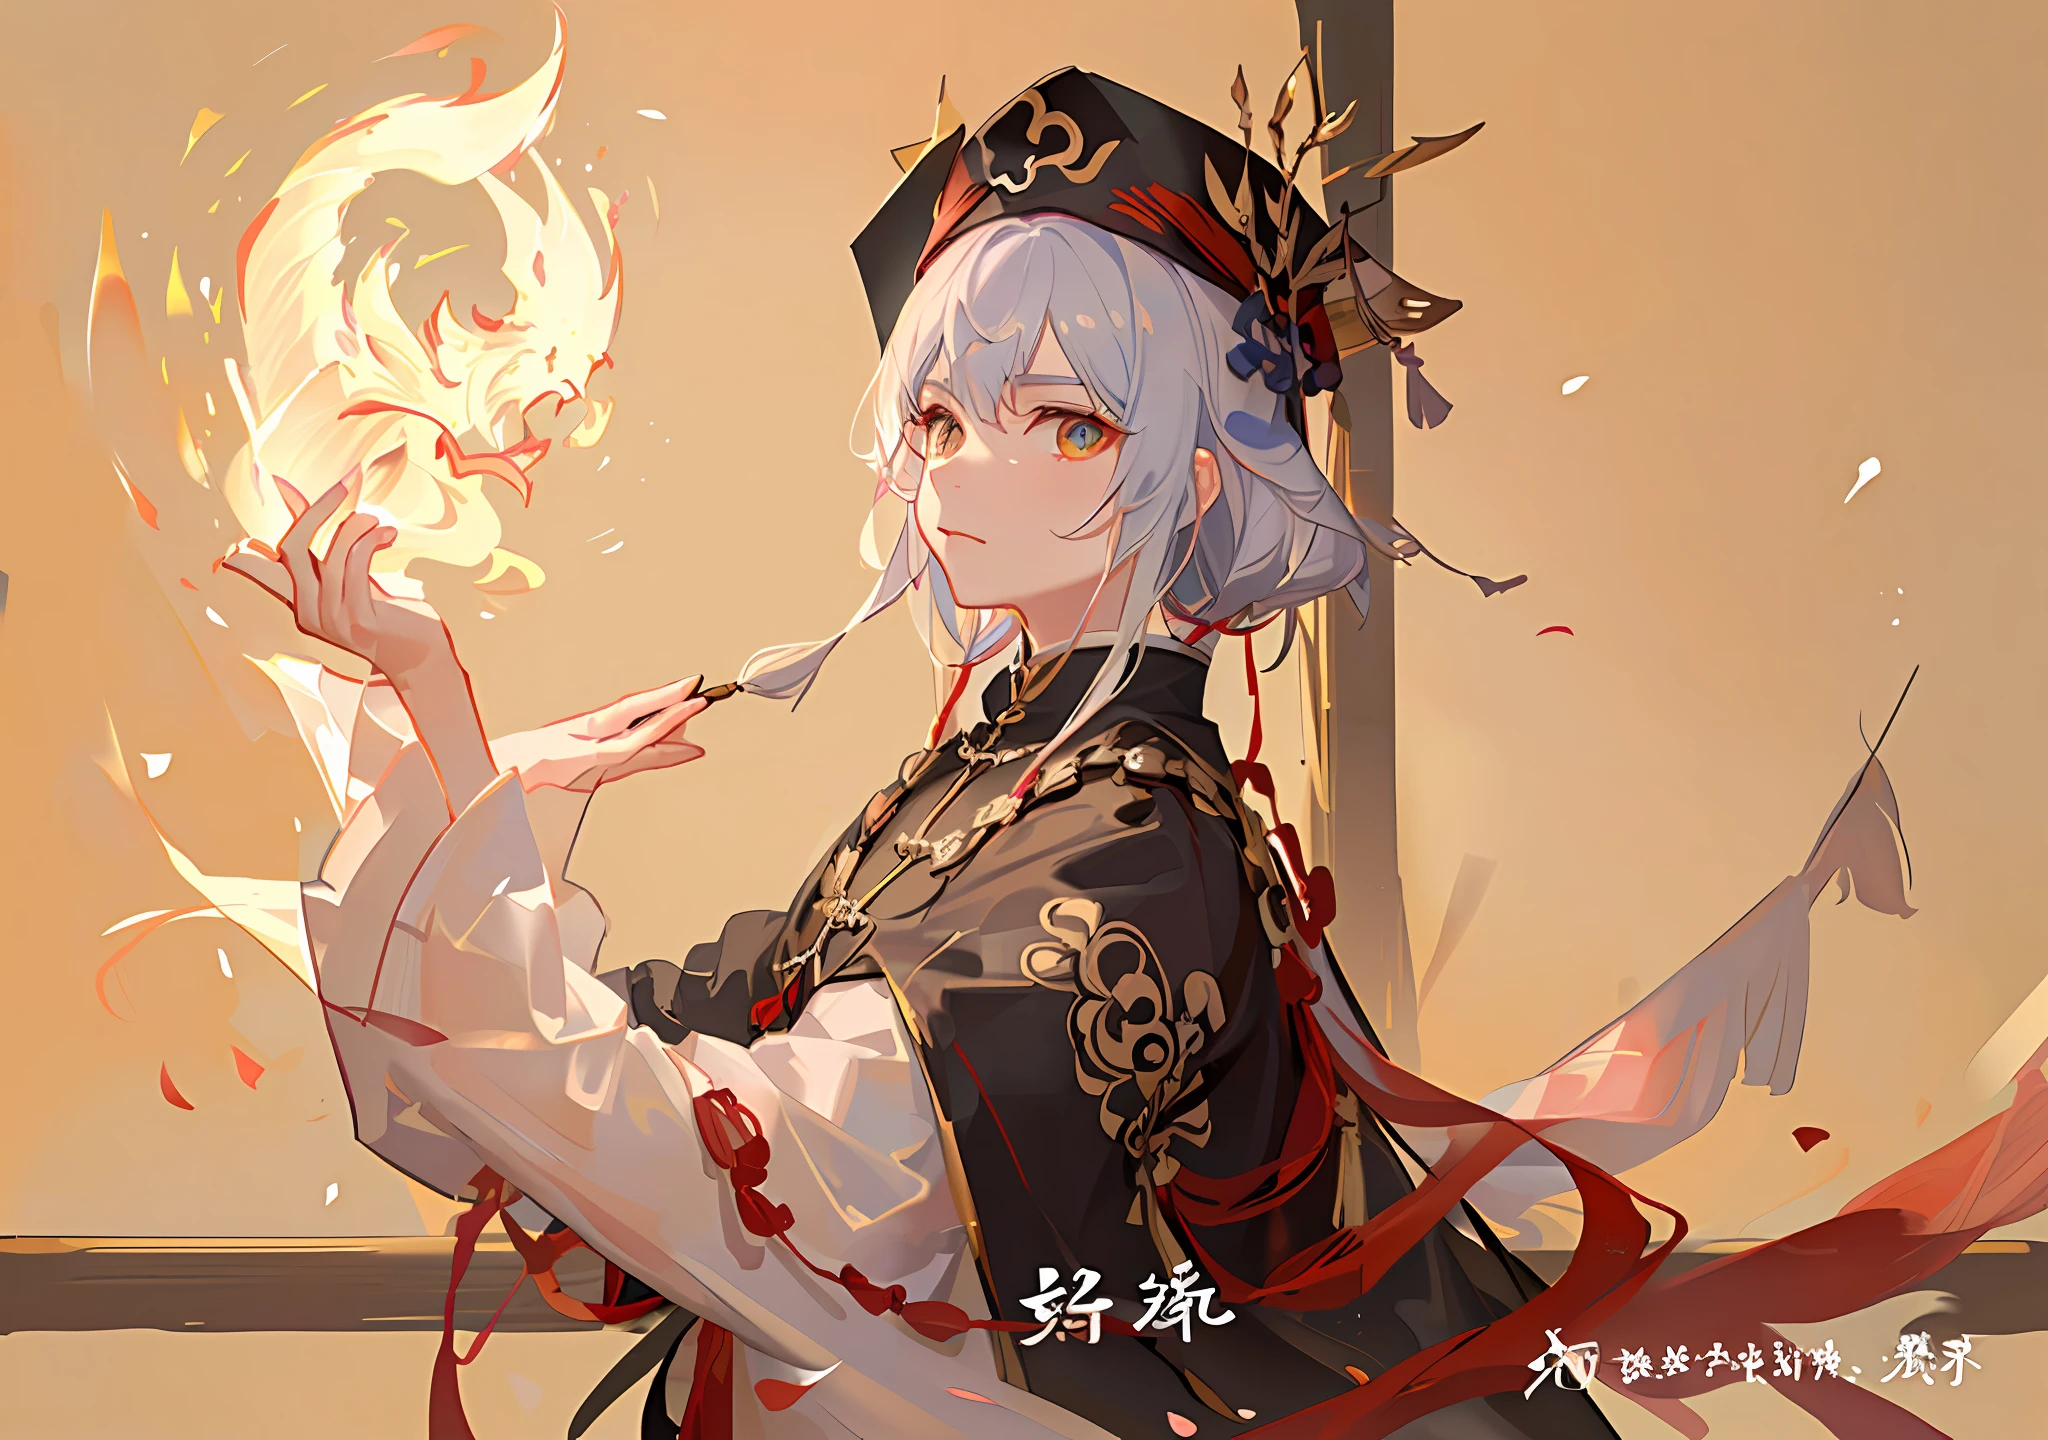 Havia um padre taoísta segurando um papel talismã em chamas na mão,  Ele está lançando um feitiço, Boné taoísta，uniforme taoísta，O fundo é um dragão escondido nas nuvens